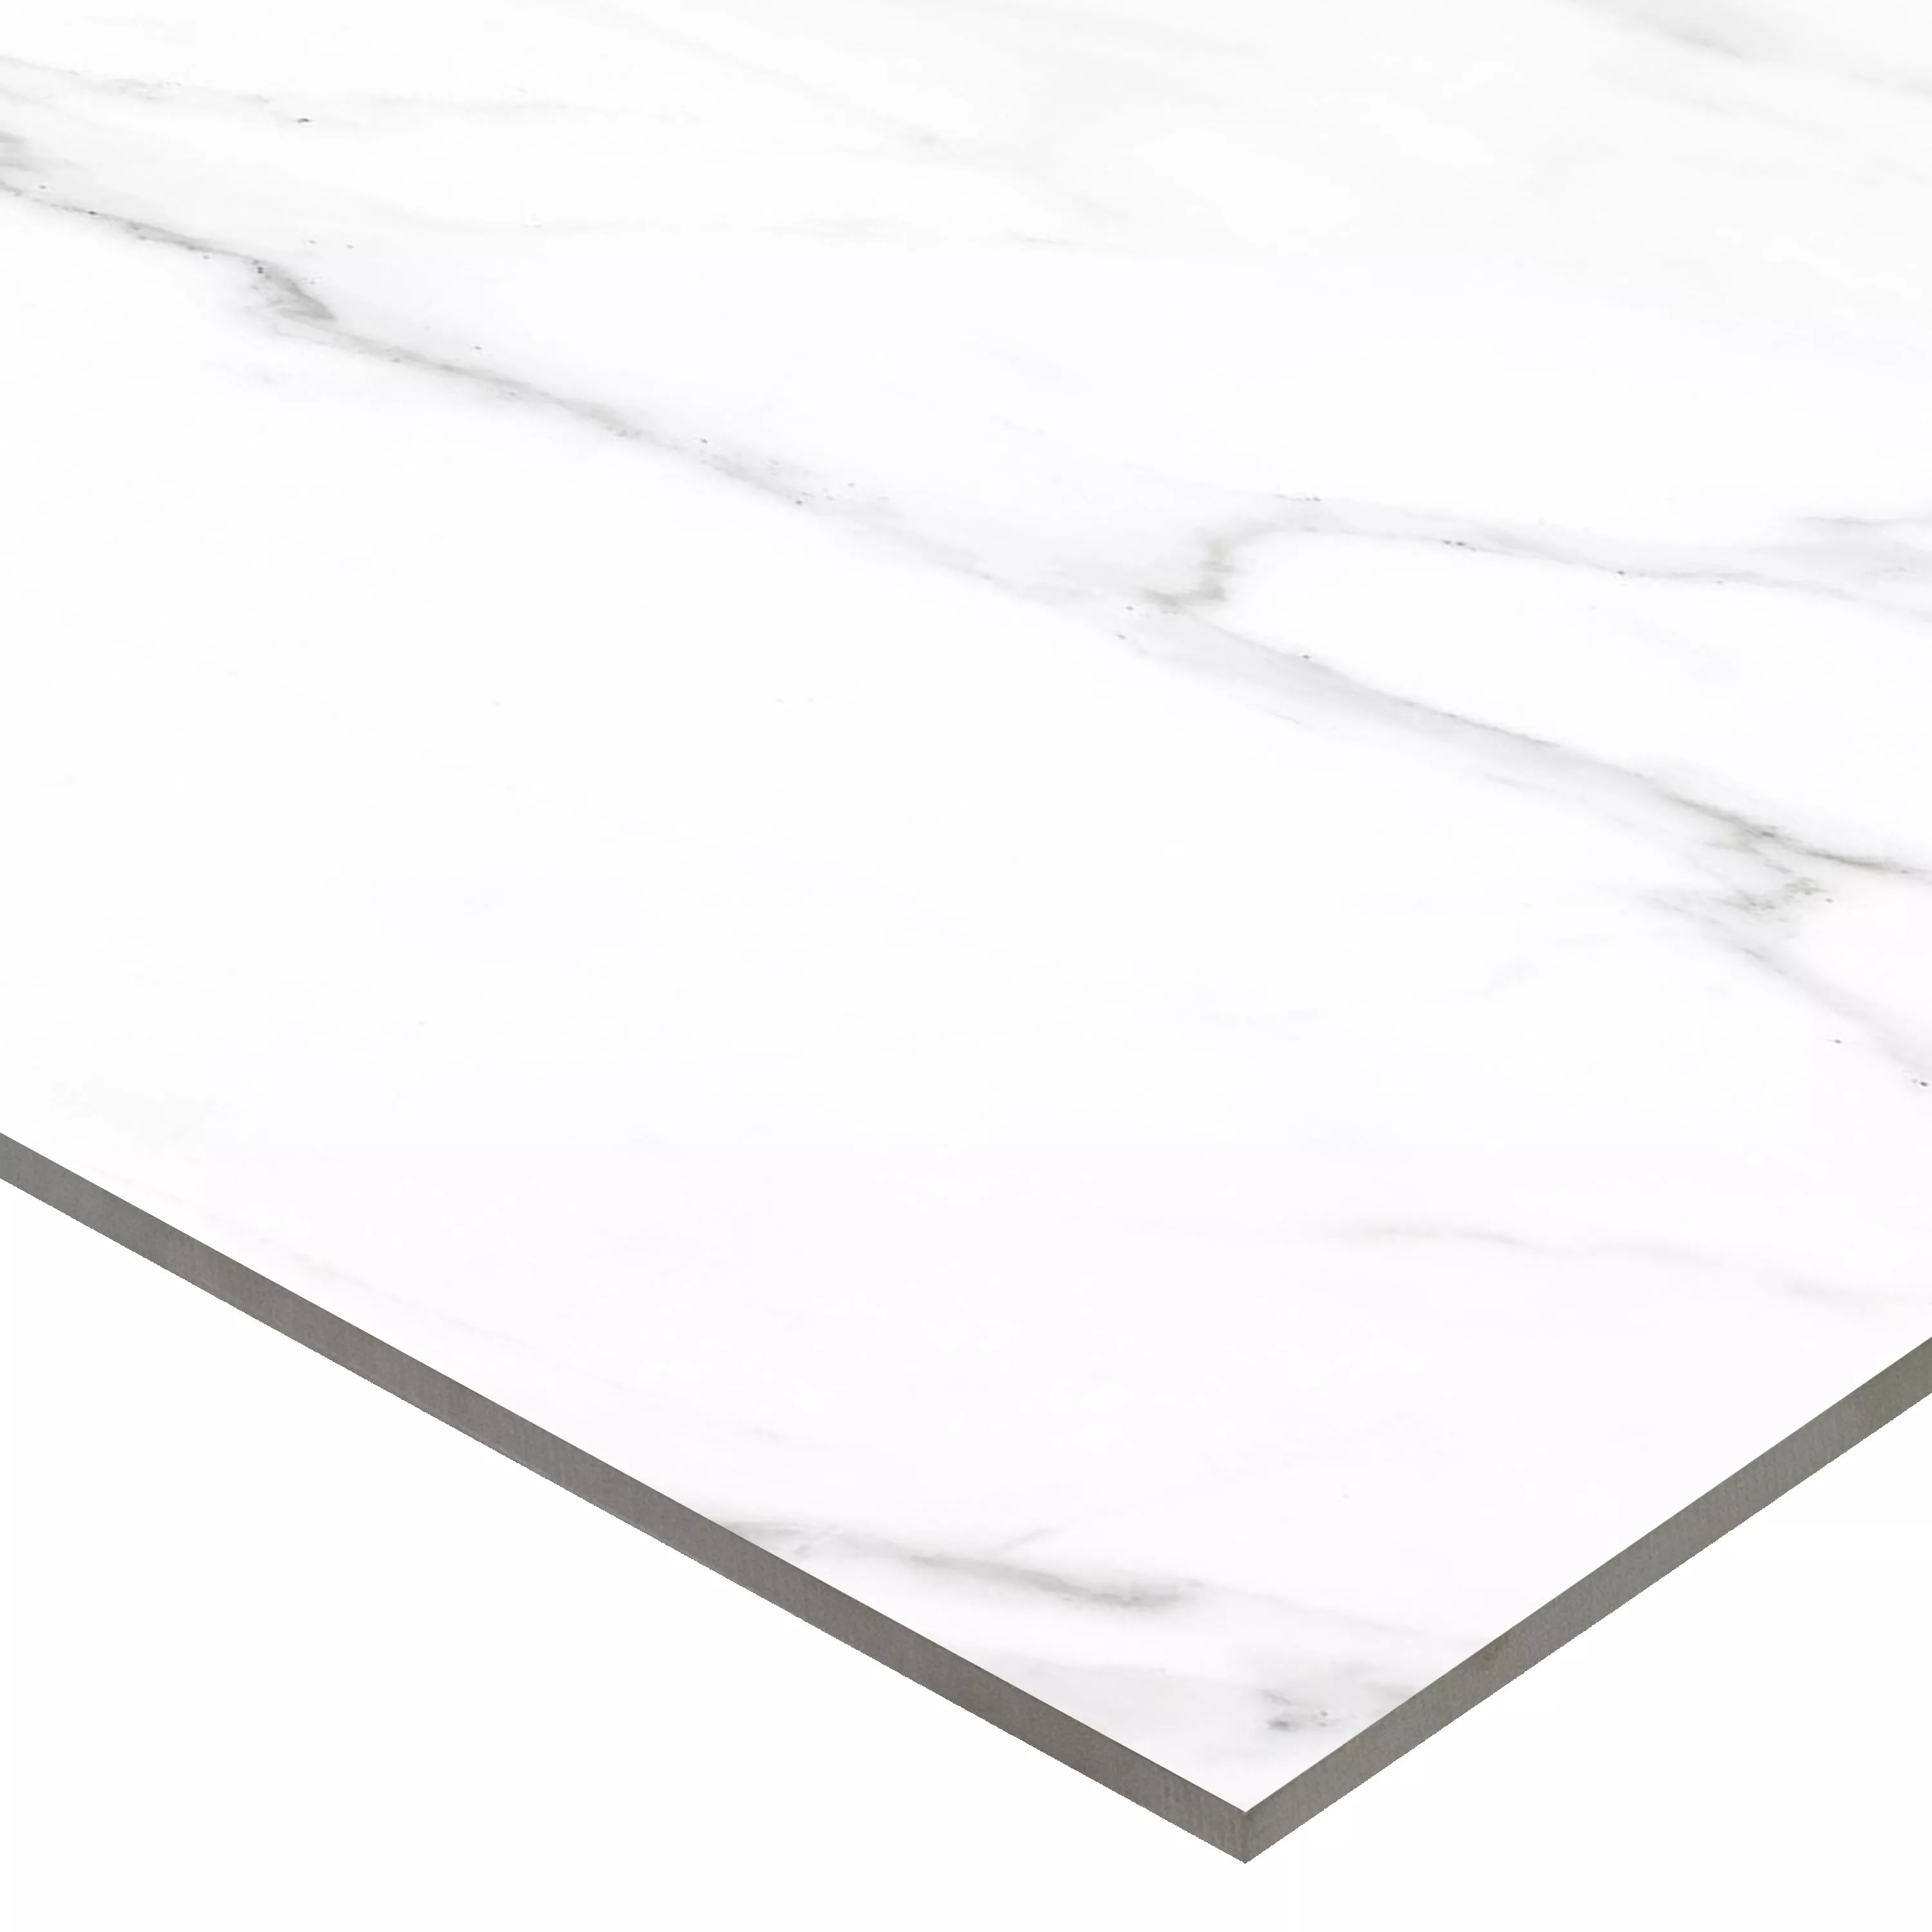 Podne Pločice Arcadia Imitacija Mramora Poliran Bijela 30x60cm